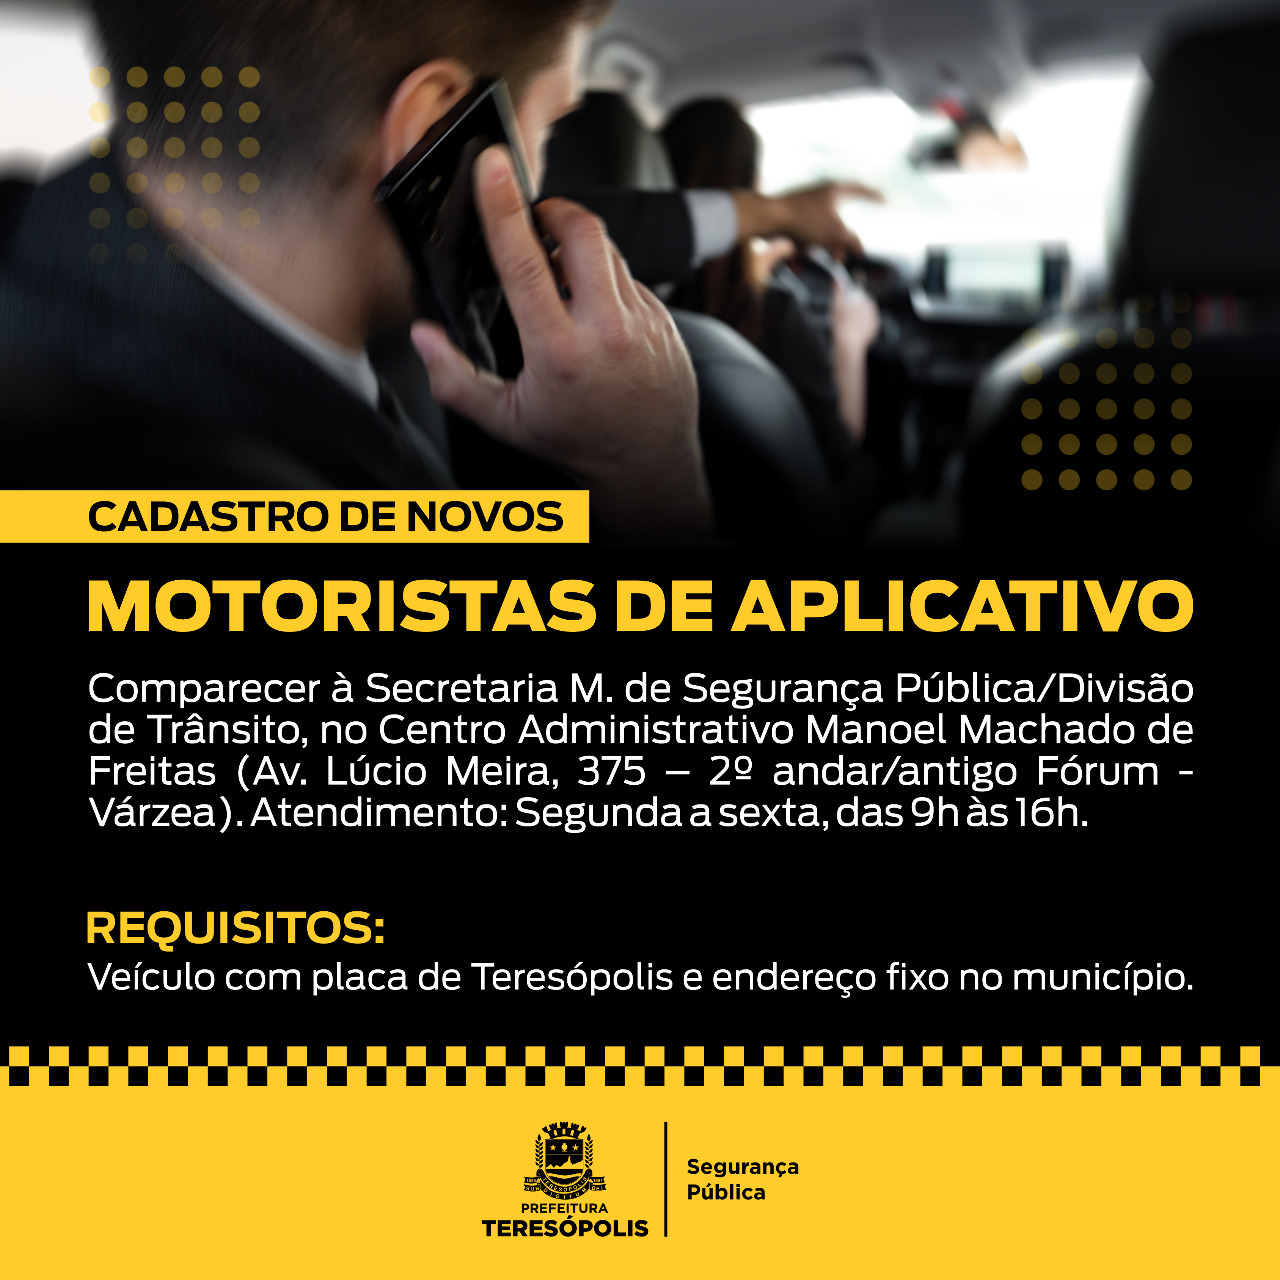 You are currently viewing Cadastro de Novos Motoristas de Aplicativo